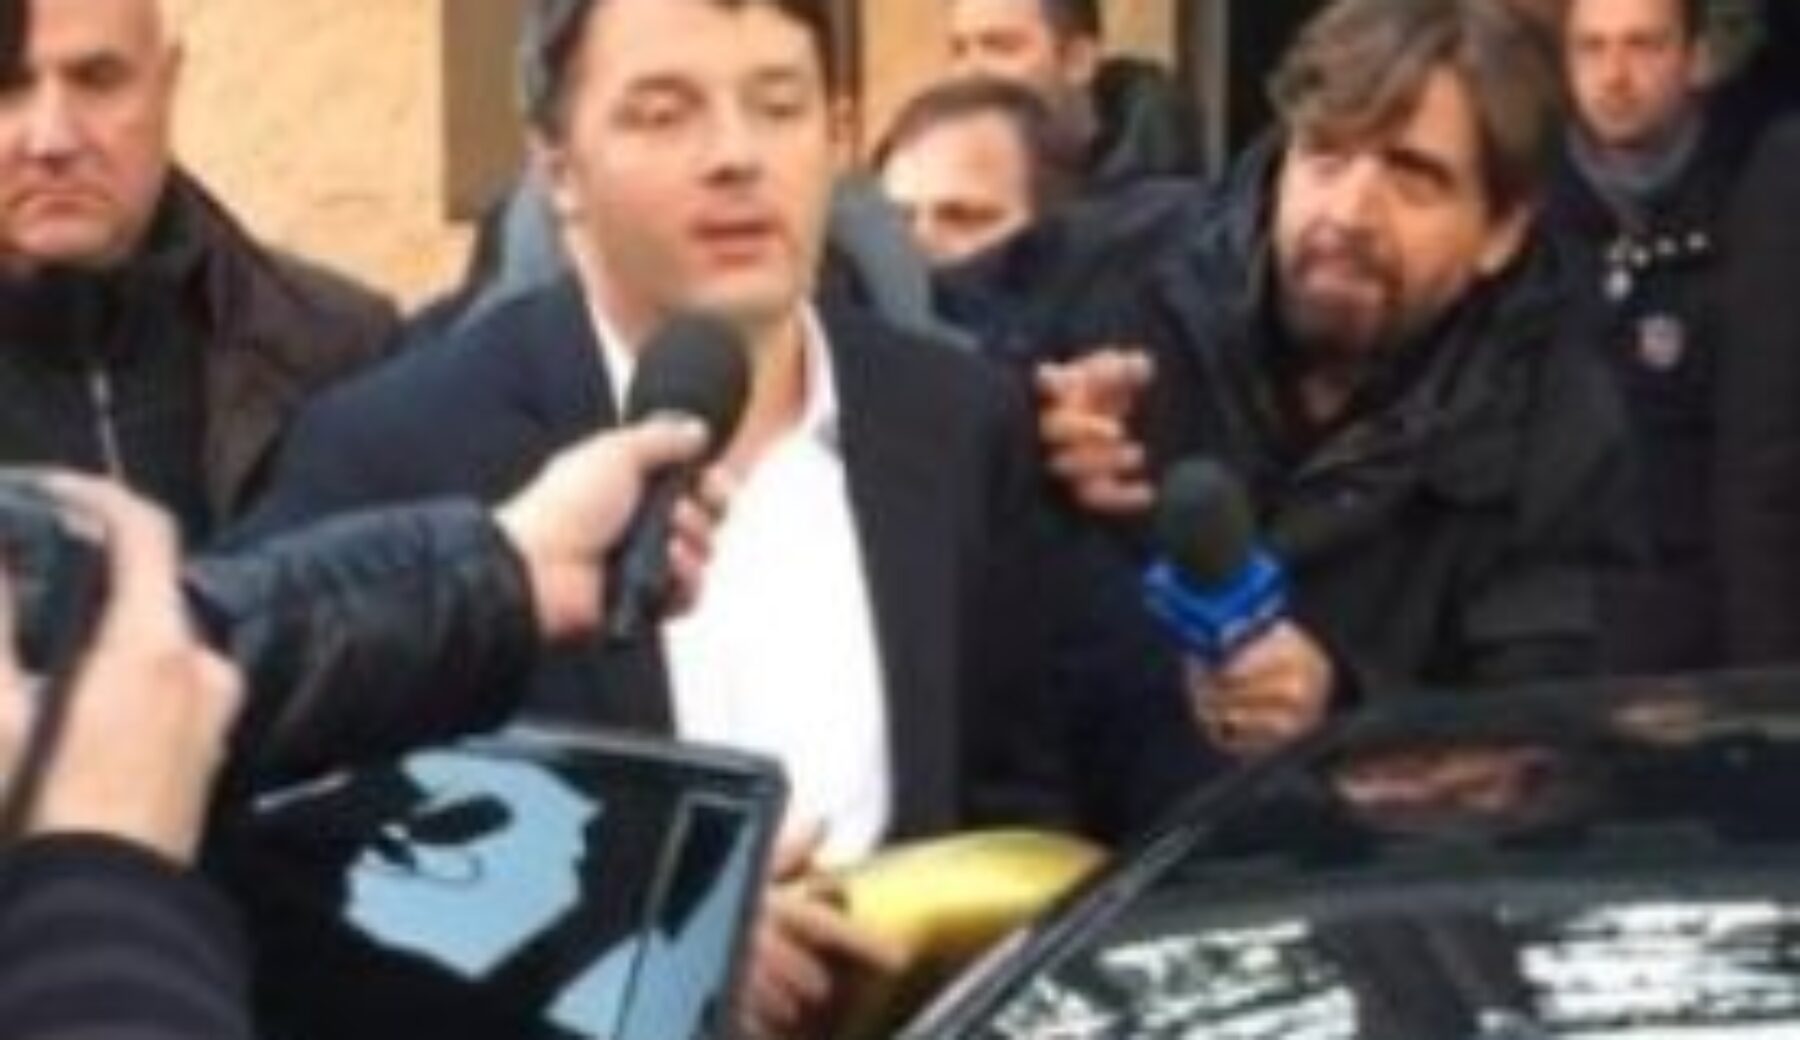 A Striscia la notizia Tapiro d’oro a Matteo Renzi: “Un Tapiro me lo merito proprio”.